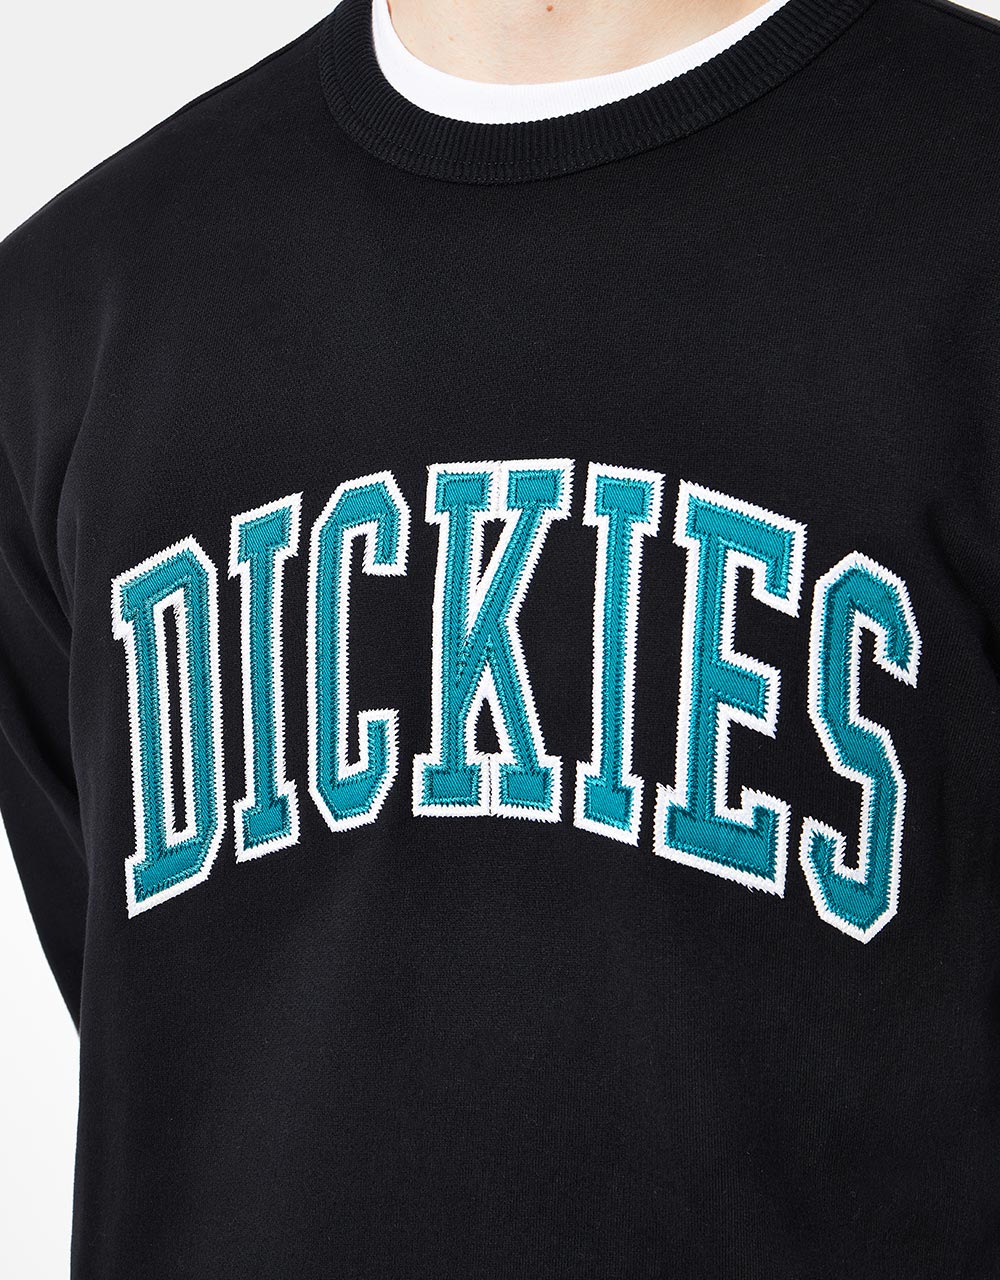 Dickies Aitkin Sweatshirt - Black/Deep Lake